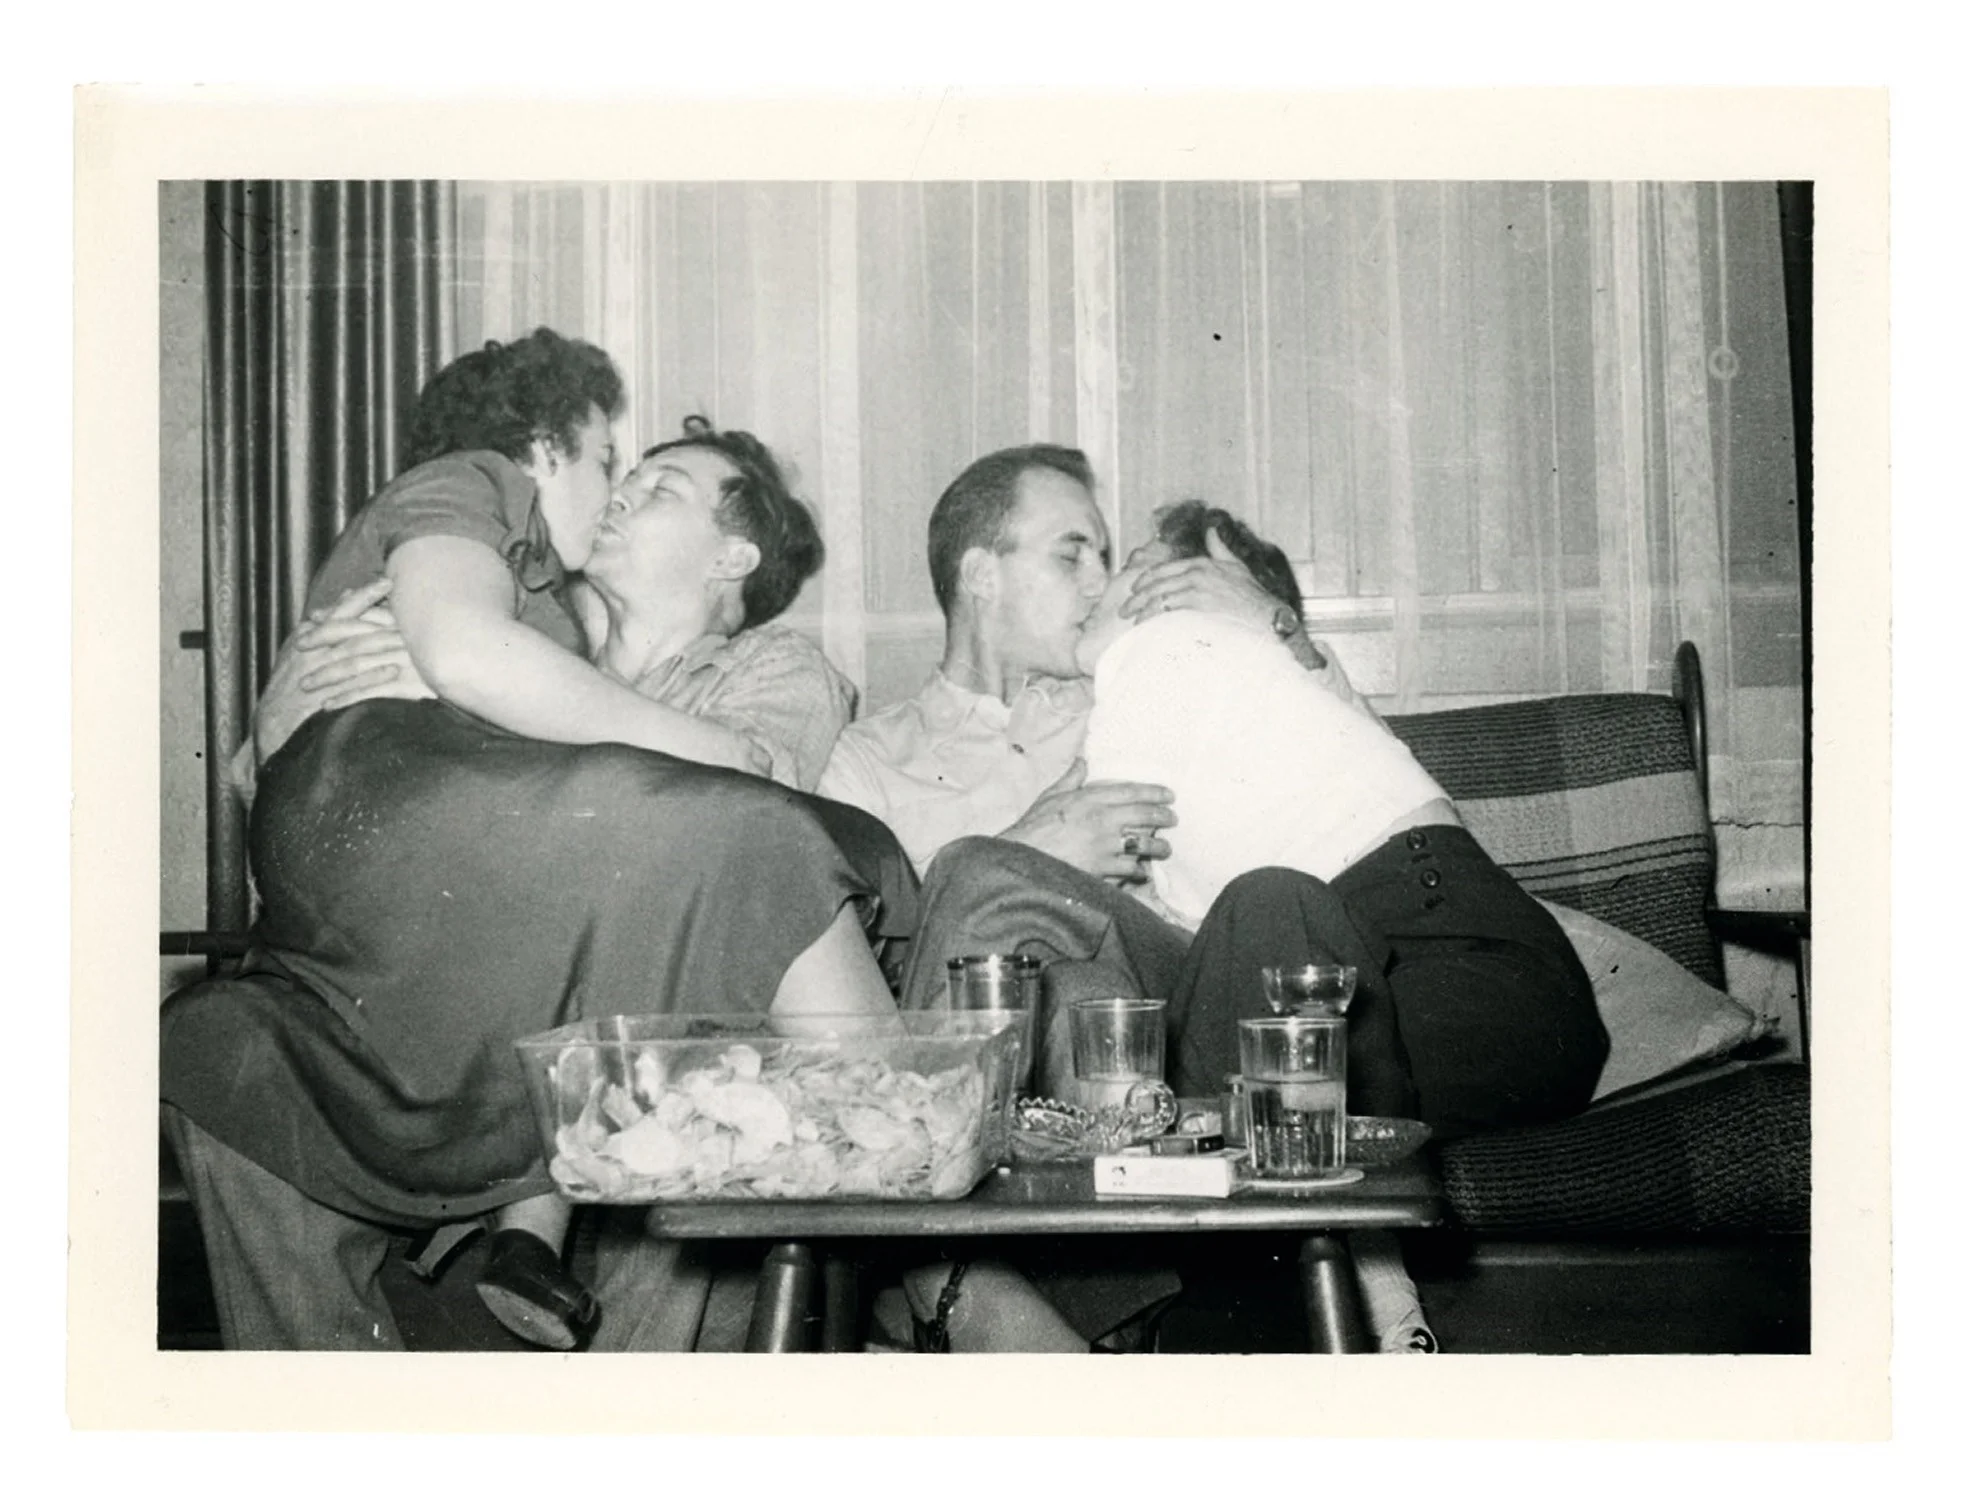 Машина часу: архівні фото про те, як цілувалися закохані 100 років тому - фото 486033